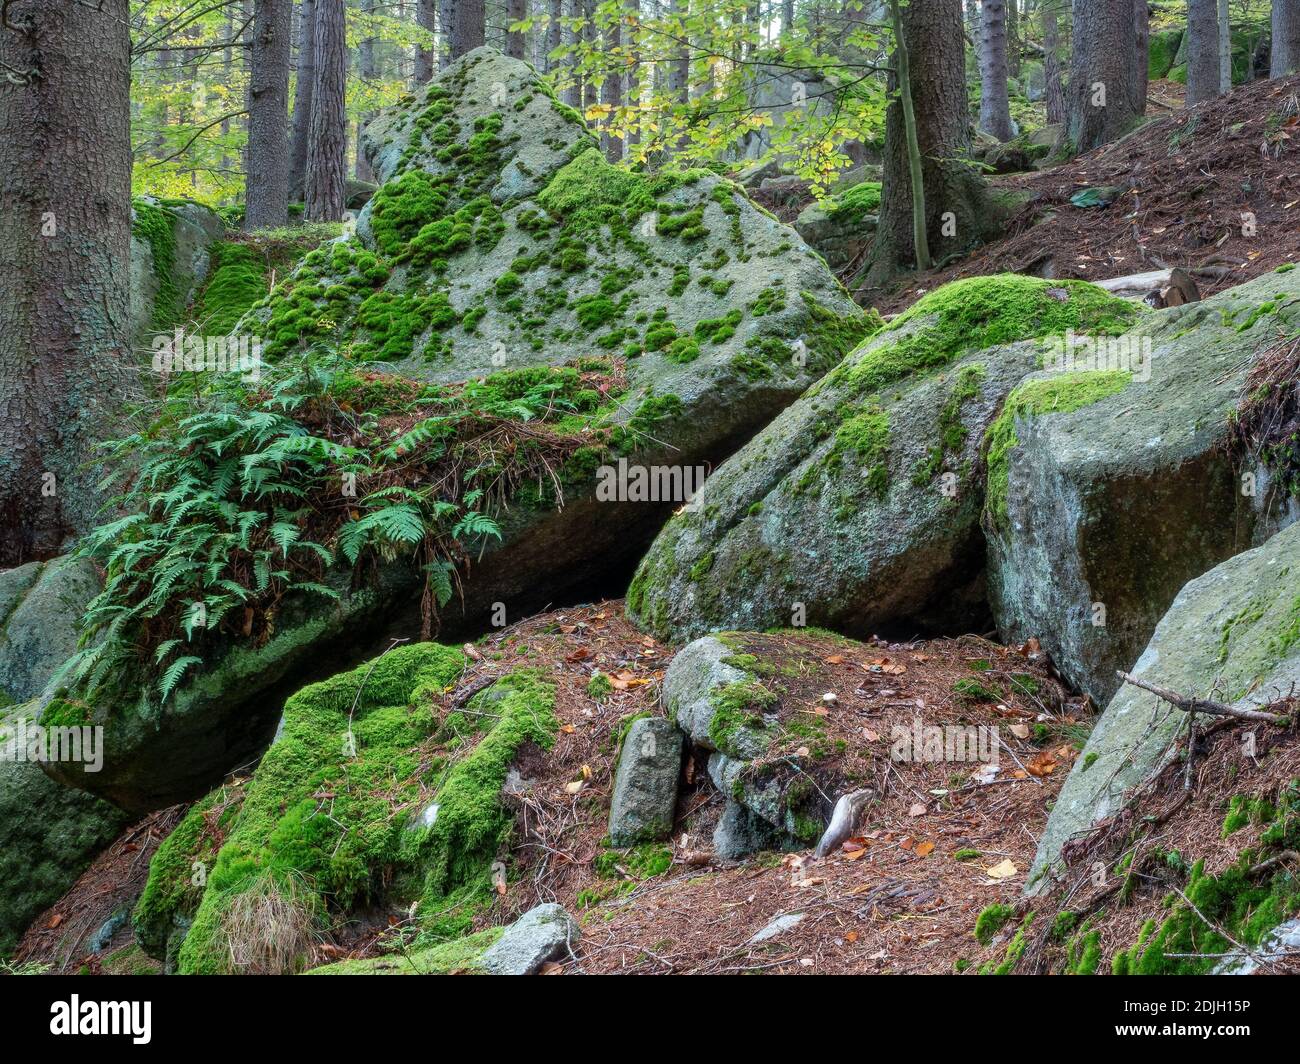 Granitfelsen mit Moos und Farnen in lebendigen grünen Farben bedeckt. Ökosystem des Nationalparks Karkonosze. Stockfoto